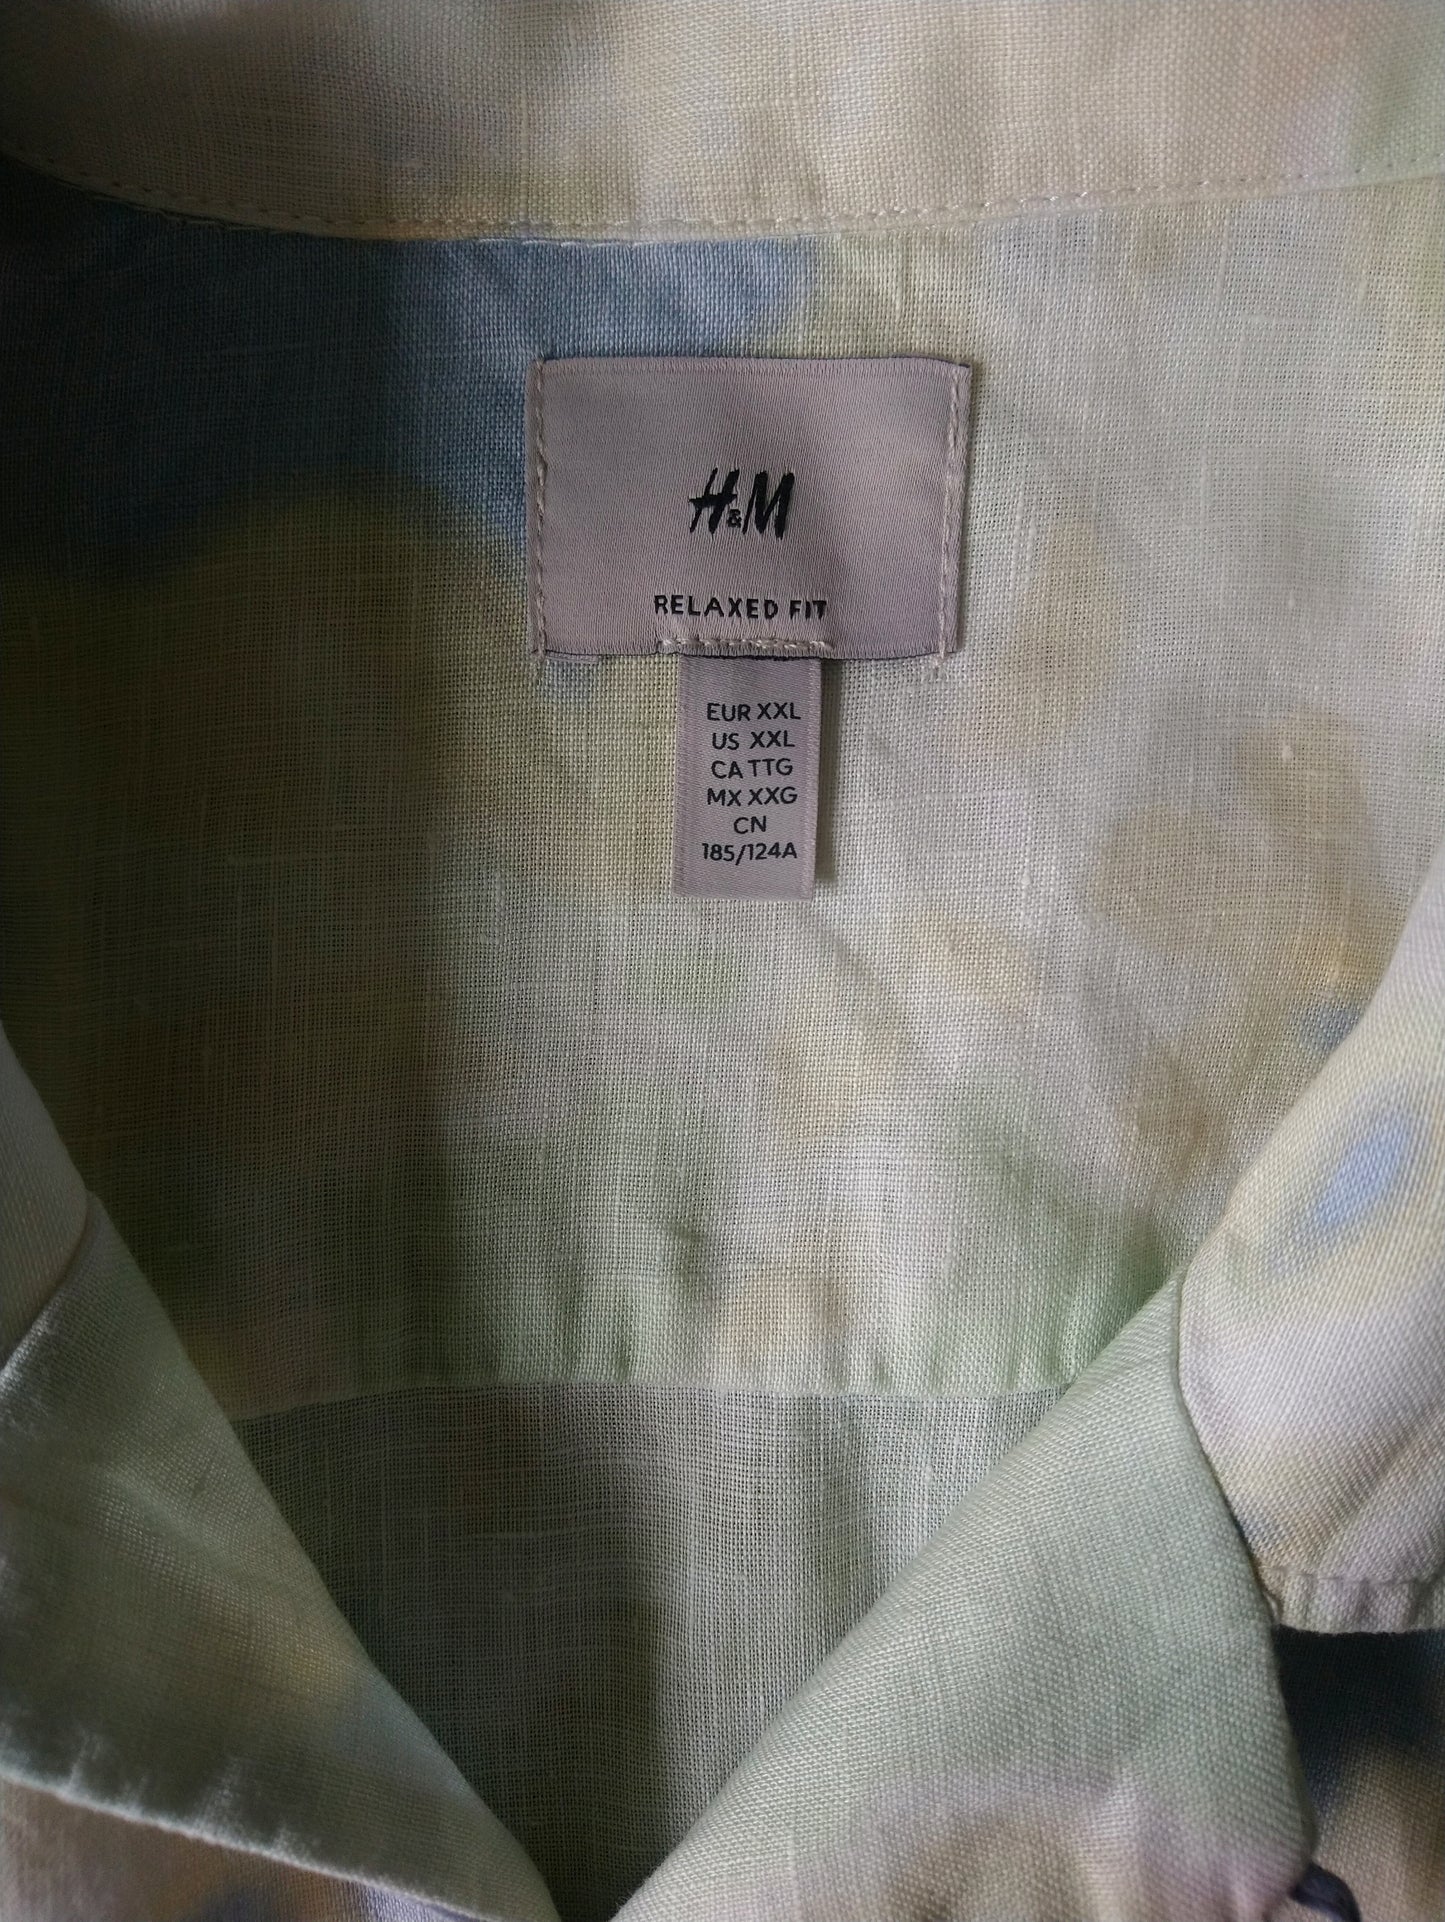 H&M Linnen overhemd korte mouw. Geel Blauw Groen gekleurd. Maat 2XL / XXL. Relaxed Fit.